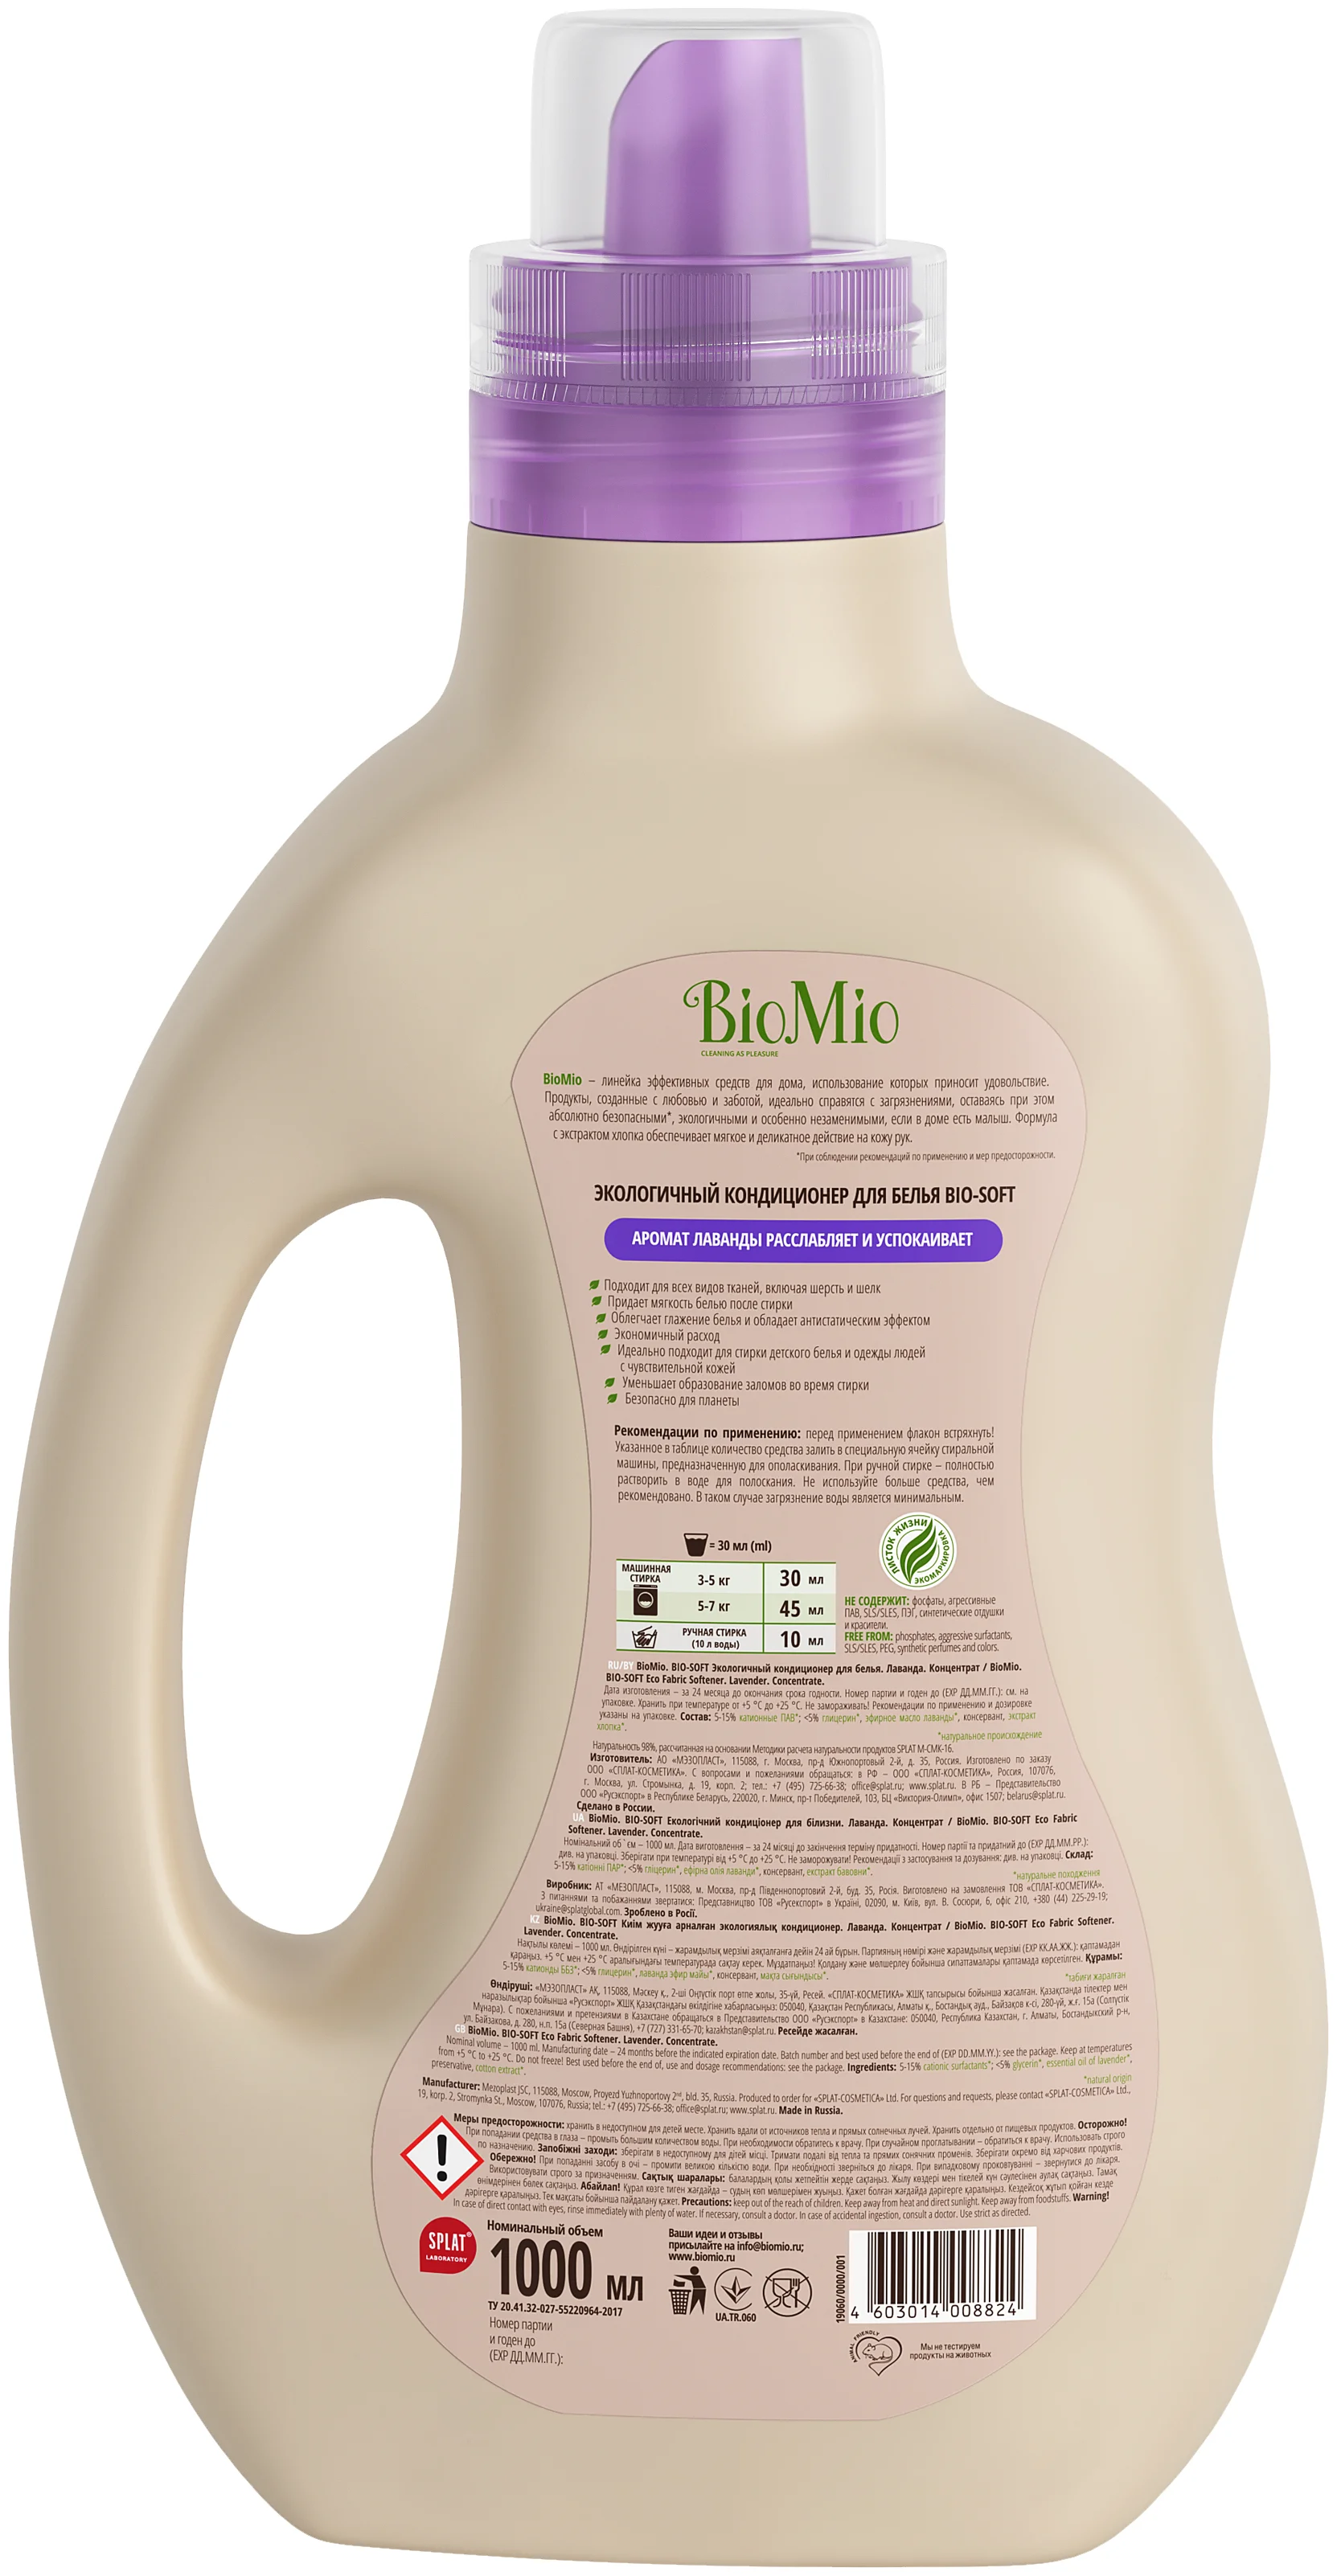 BioMio BIO-SOFT с эфирным маслом лаванды и экстрактом хлопка - особенности: гипоаллергенное, подходит для чувствительной кожи, биоразлагаемое, концентрат